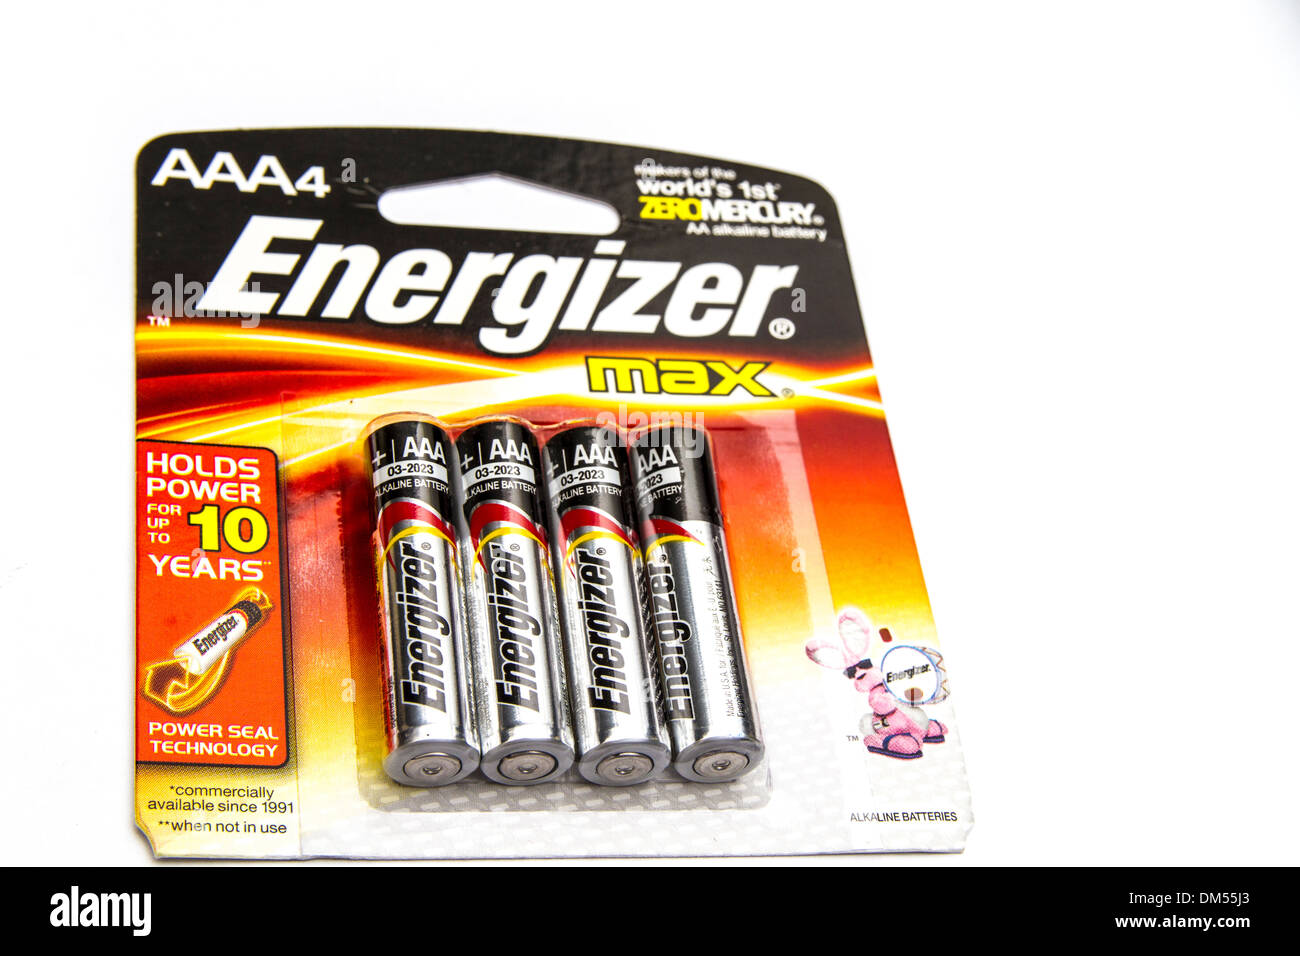 LOT 12 Radio Shack Alkaline AAAA size 1.5v Batteries 